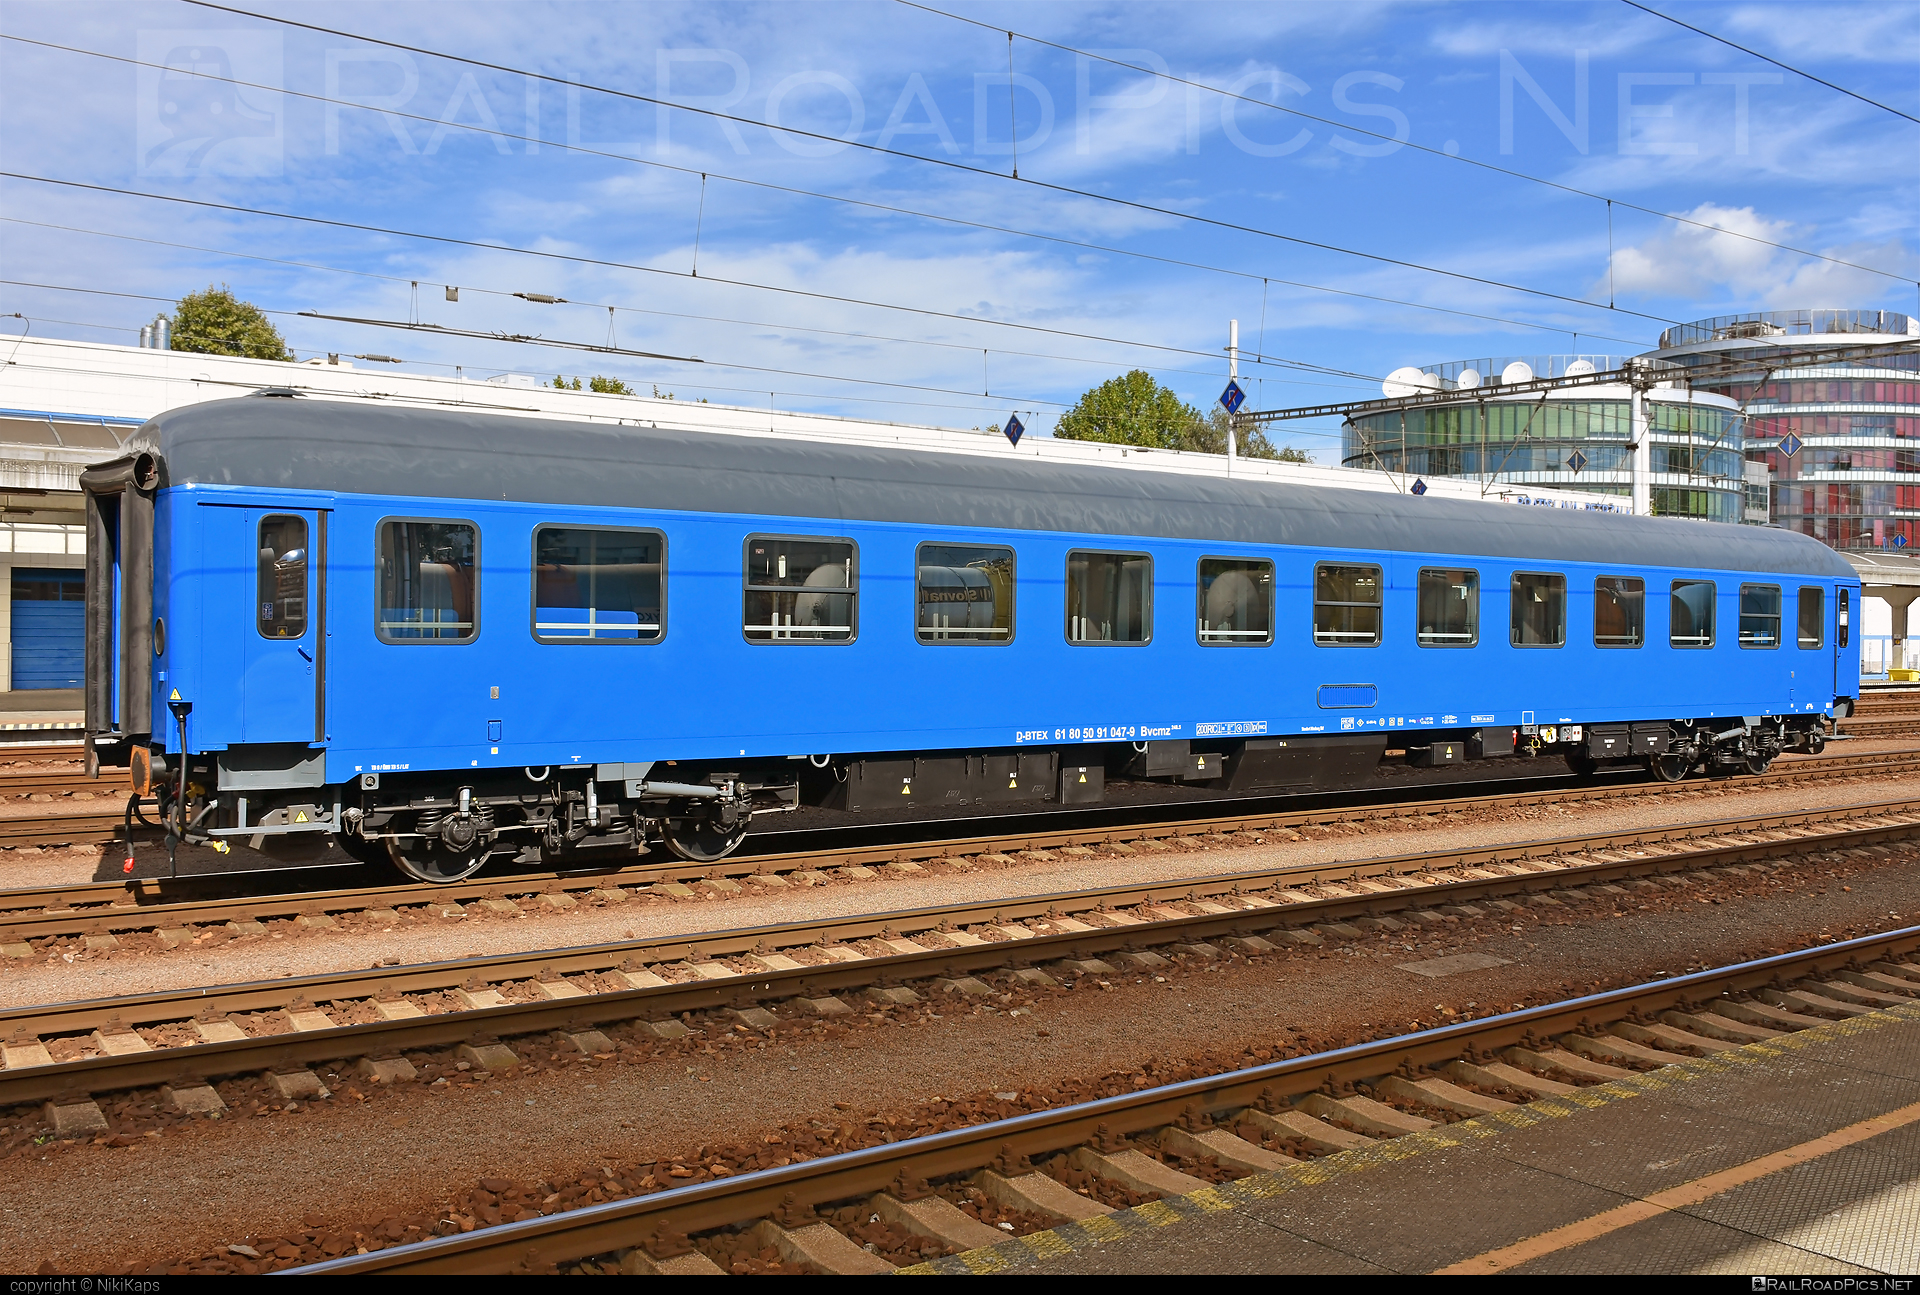 Class B - Bvcmz - 50 91 047-9 operated by Bahn Touristik Express GmbH #bahntouristikexpress #btex